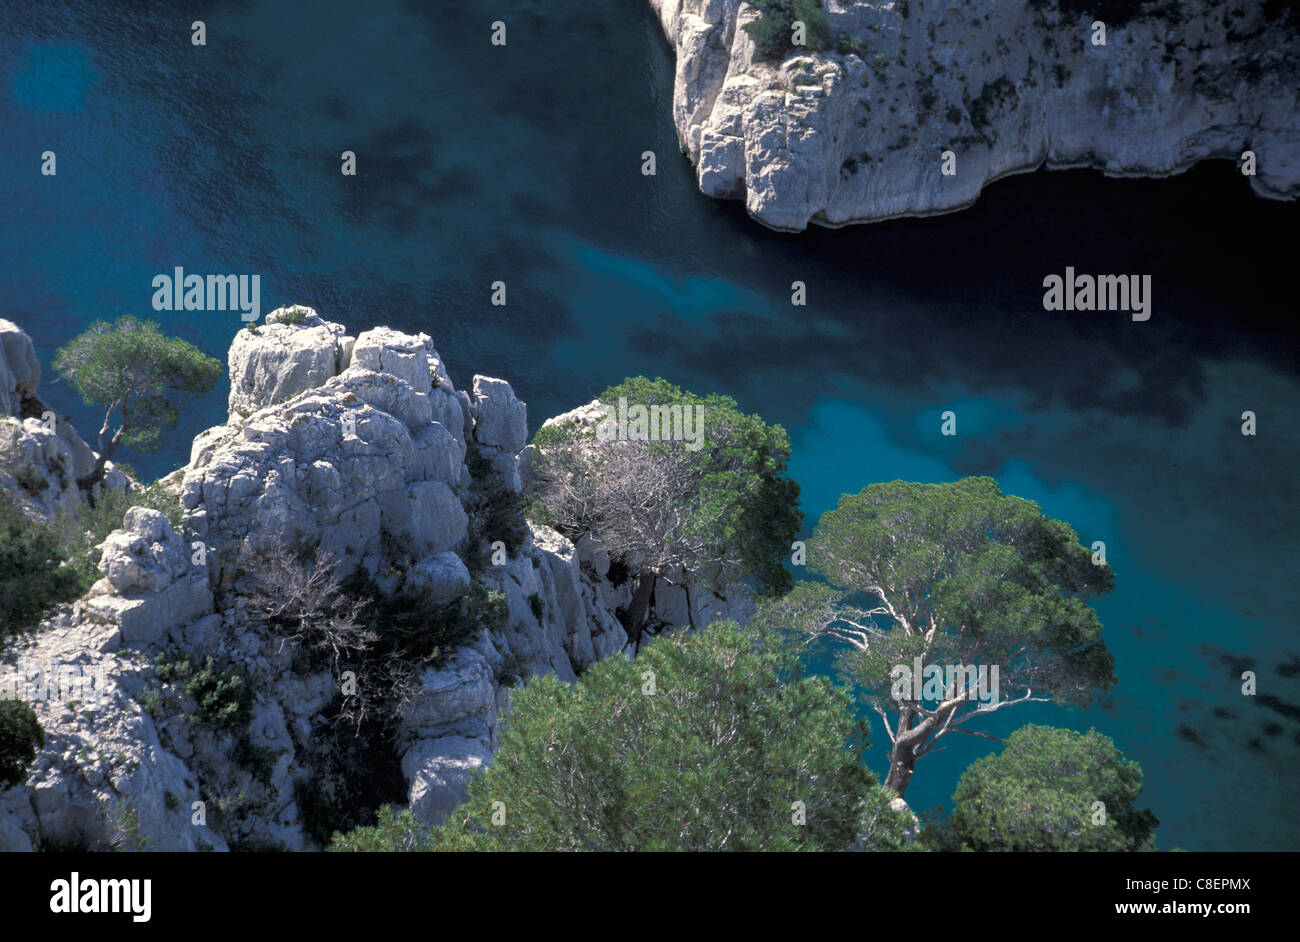 Calanque de Vau, Cassis, Cote d'Azur, Provence, France, Europe, rocks, water Stock Photo